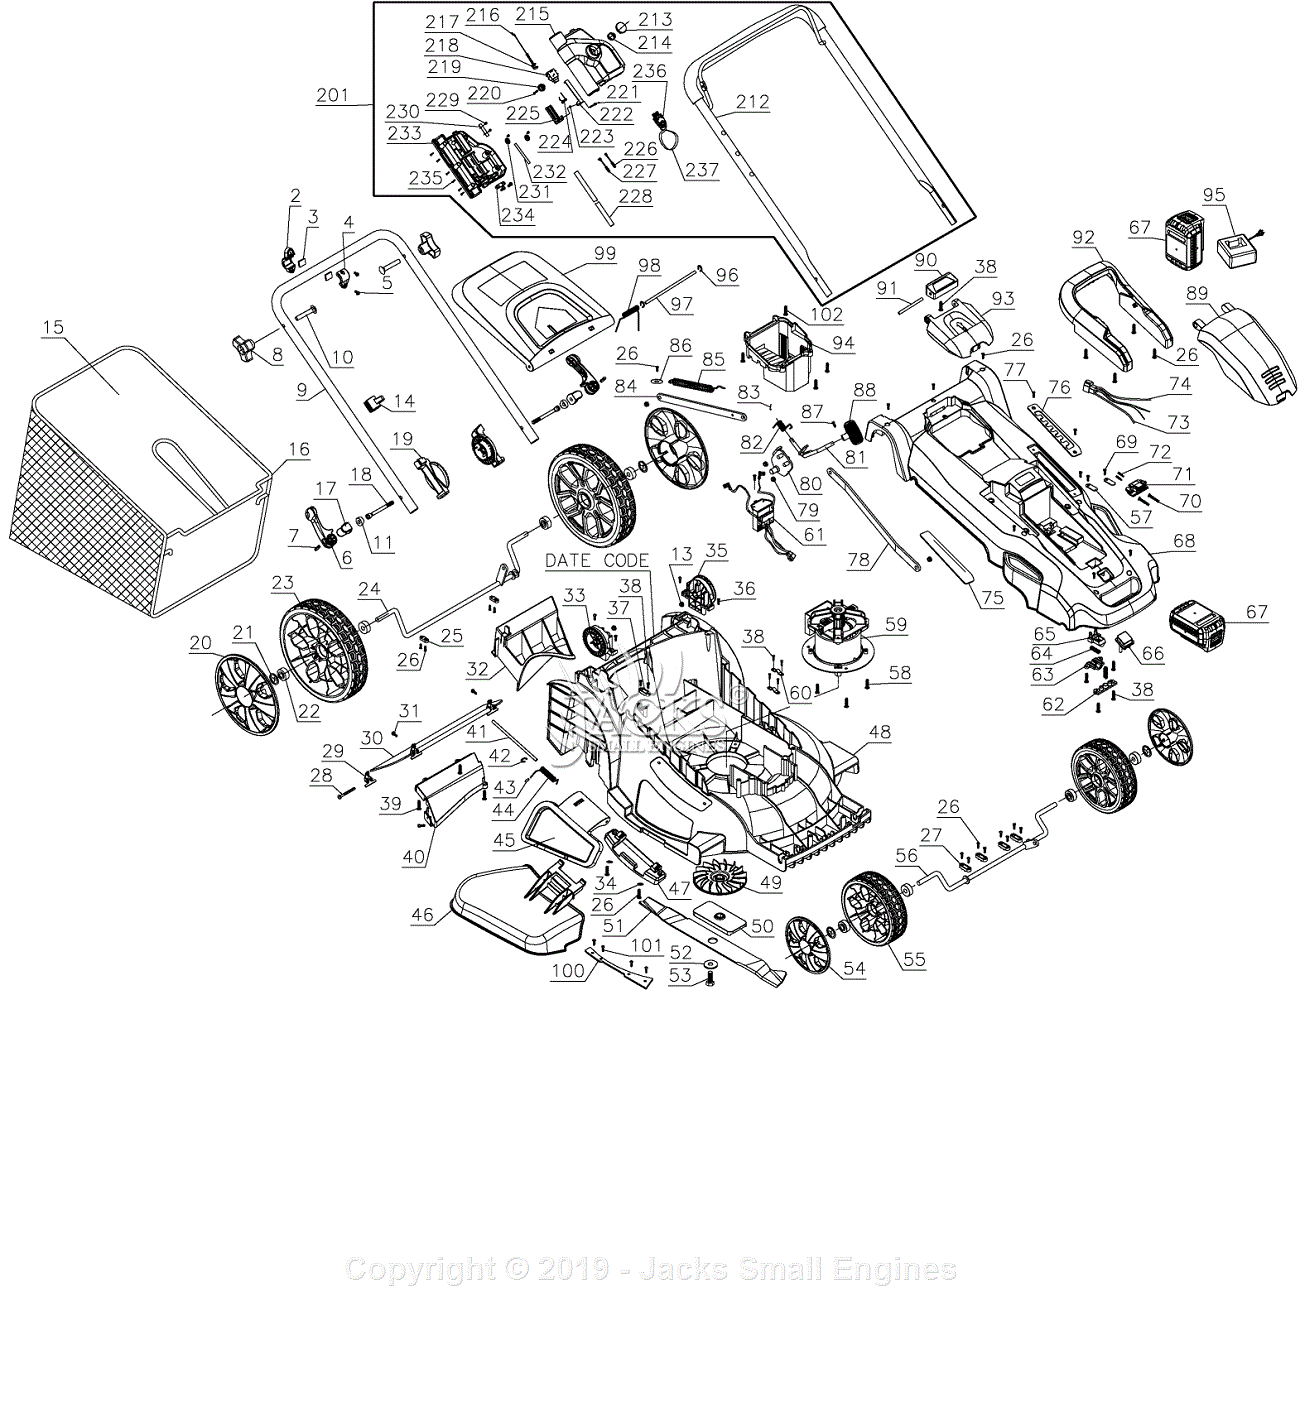 Black & Decker CM2045 Parts Diagrams